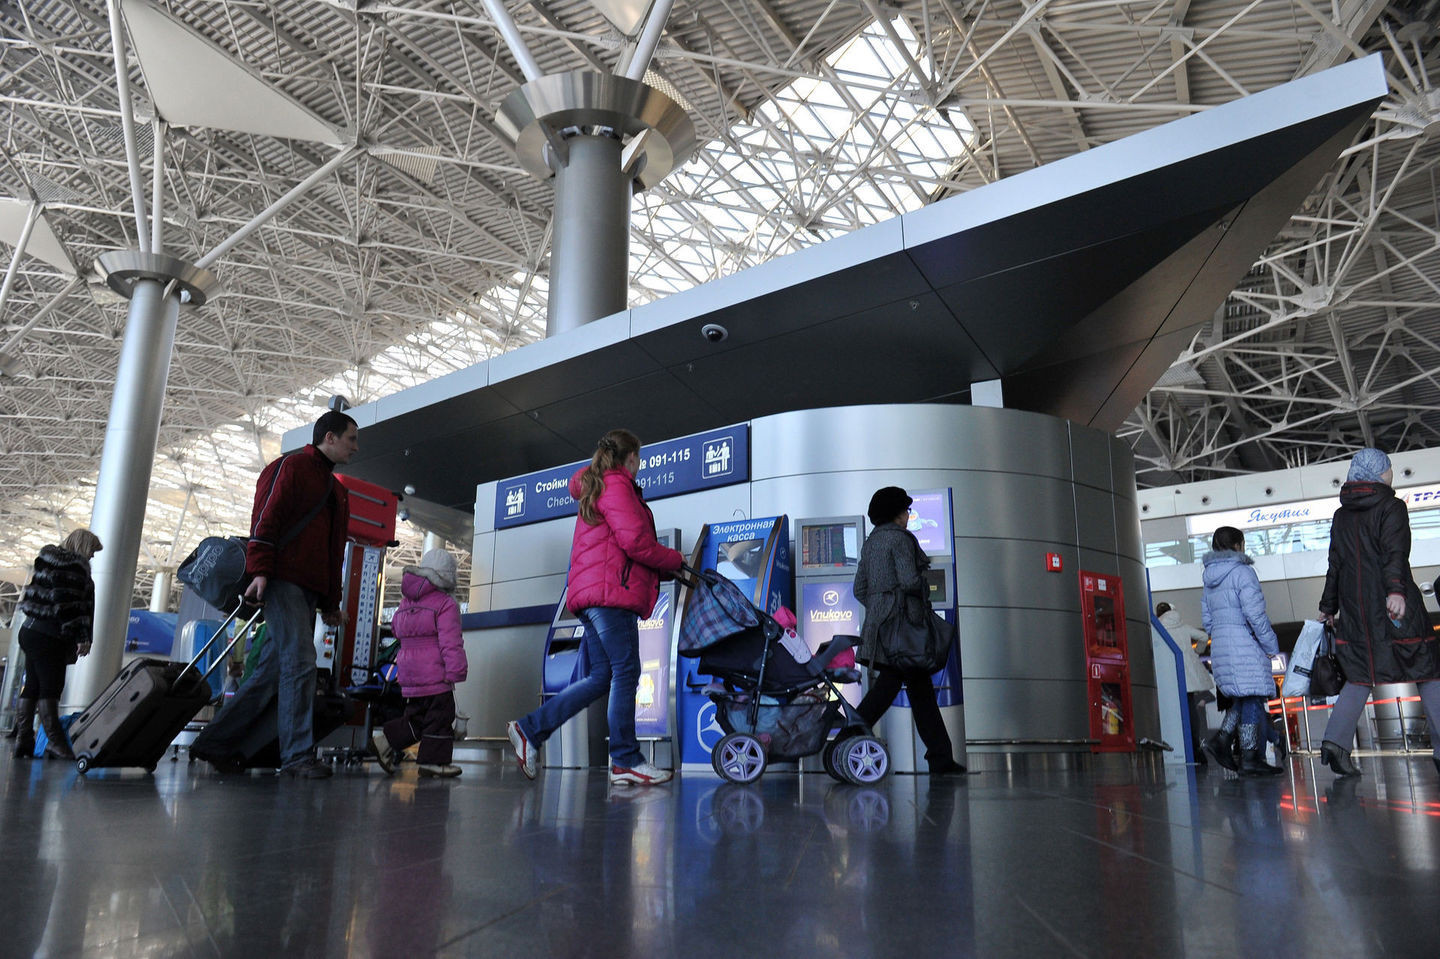 Дмитрий Твардовский: «Региональные аэропорты – возможность перенастроить транспортные потоки и поддержать развитие экономики и промышленности»